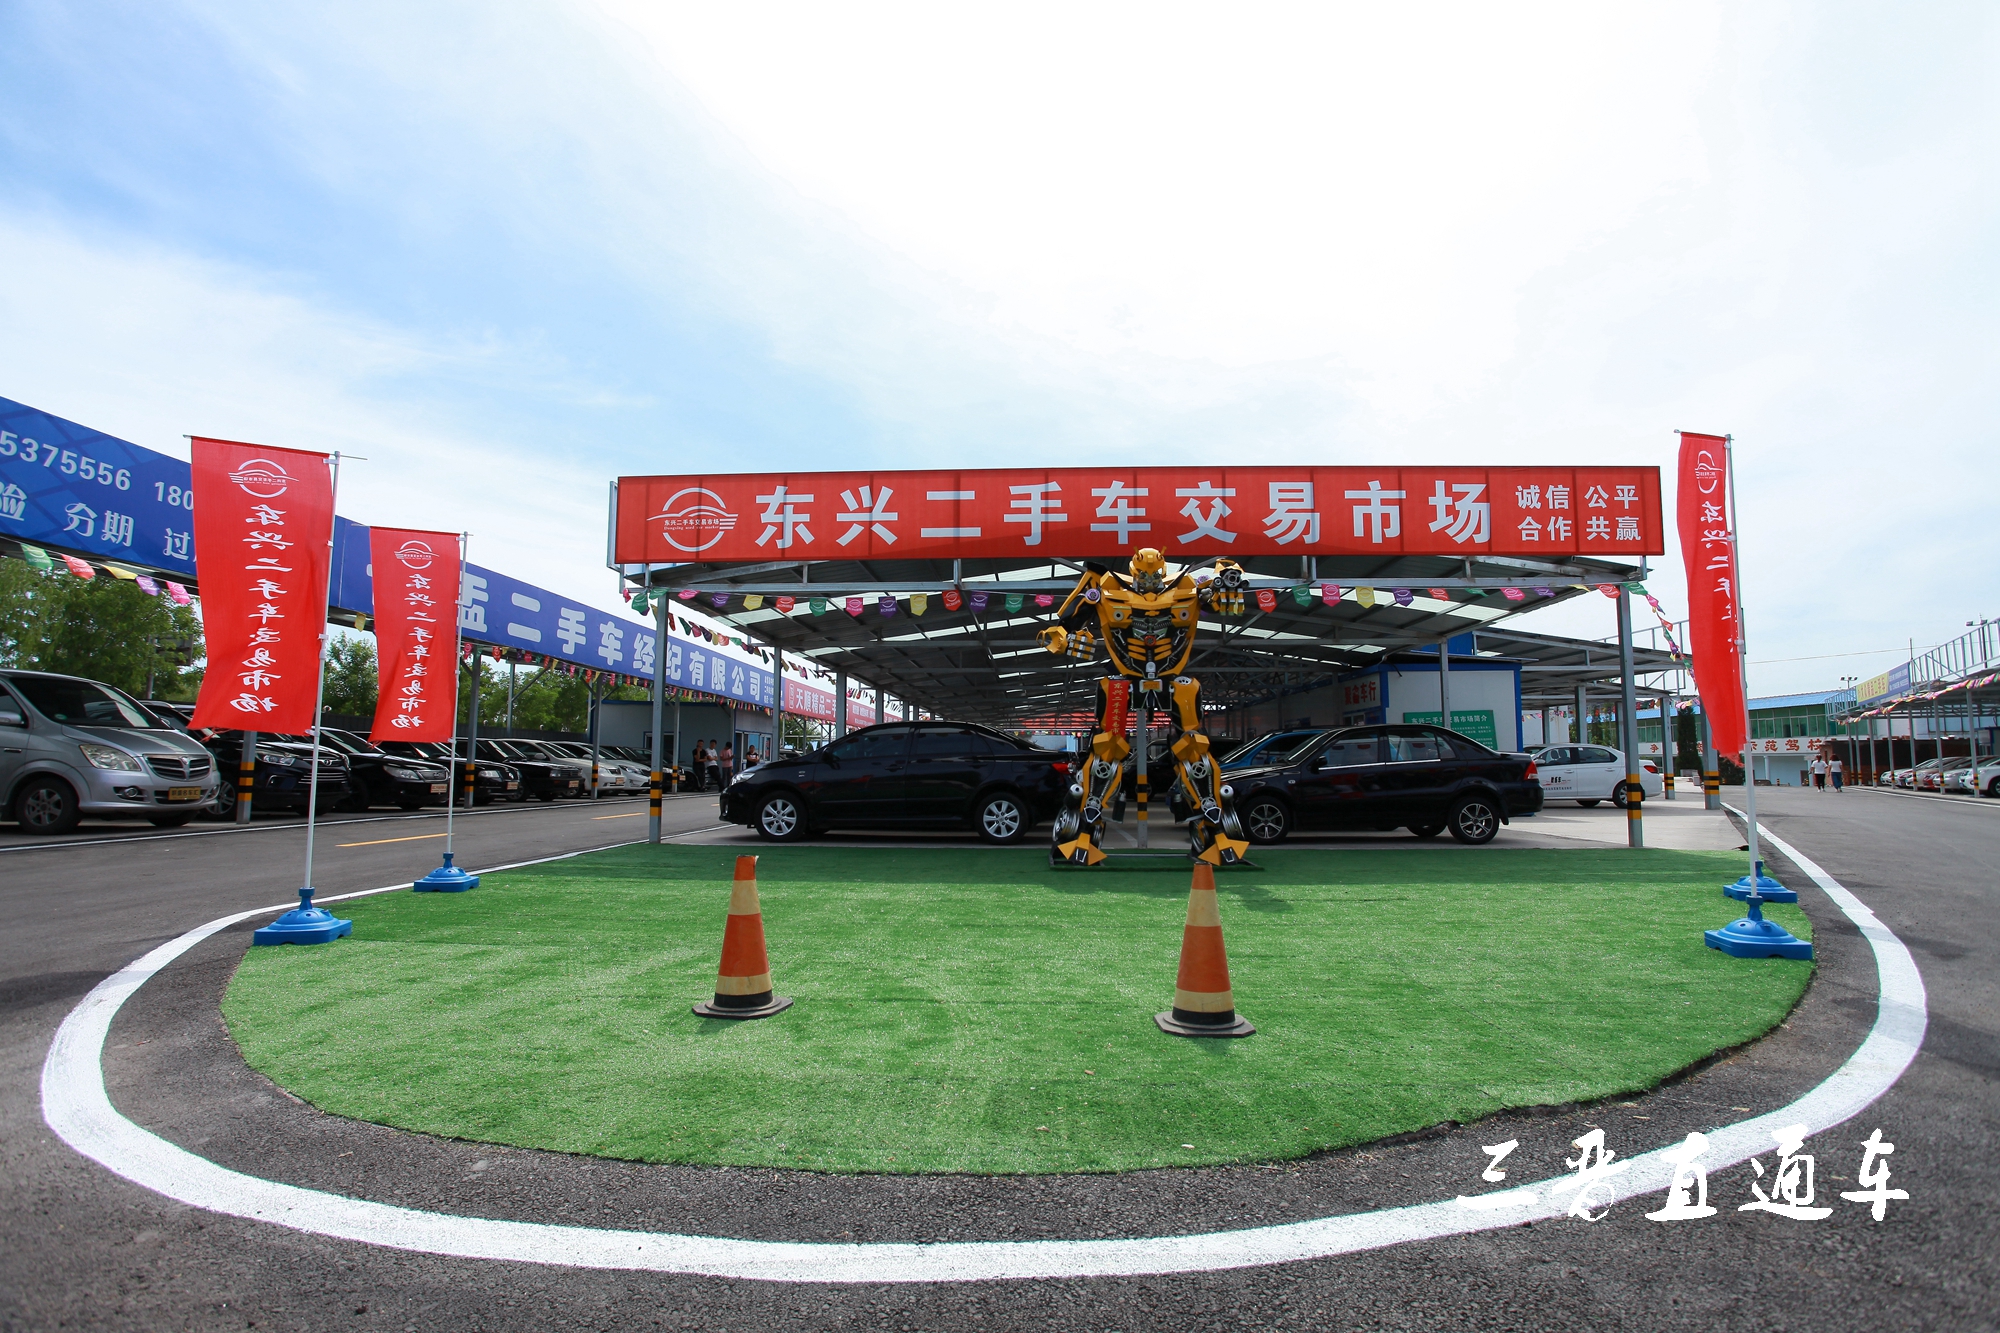 盂县最大的东兴二手车交易市场,极具性价比的神车圆你梦想!